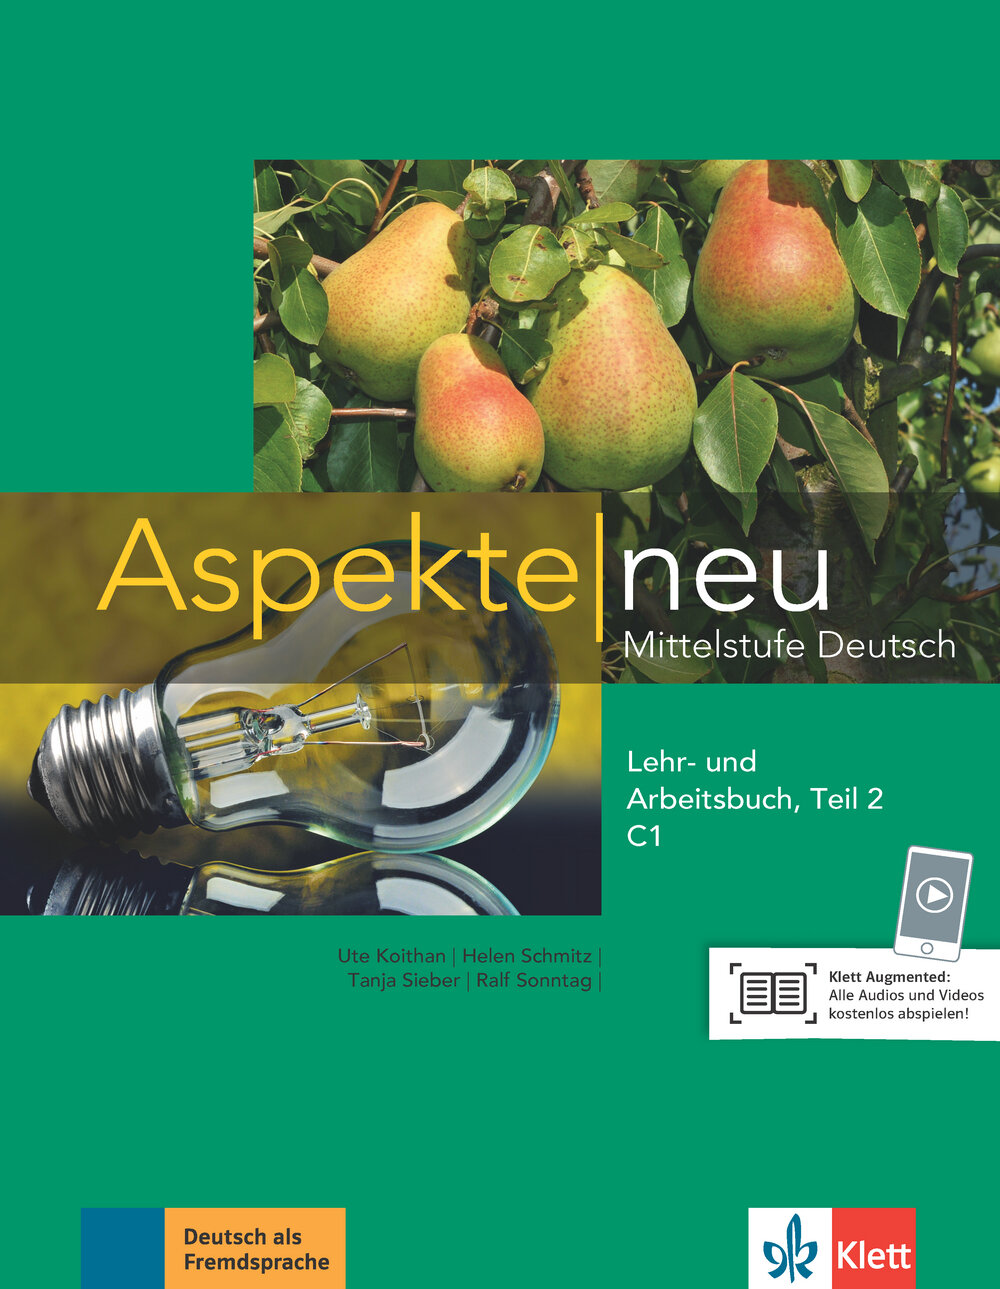 Aspekte neu. C1. Lehr- und Arbeitsbuch. Teil 2. Mittelstufe Deutsch (+CD)